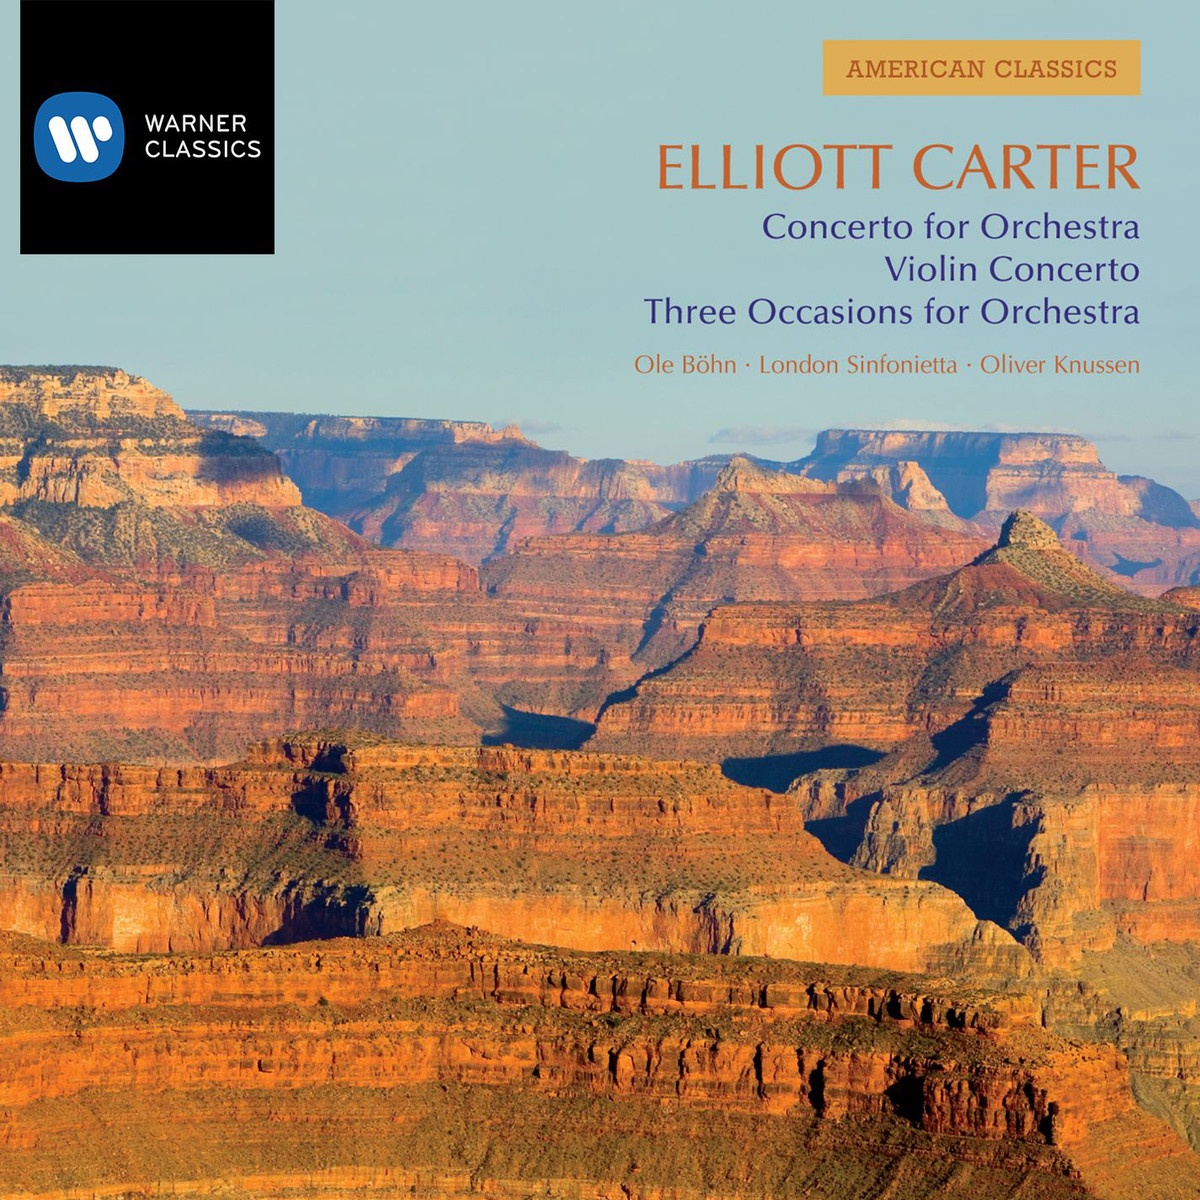 Concerto for Orchestra: I.       Allegro non troppo